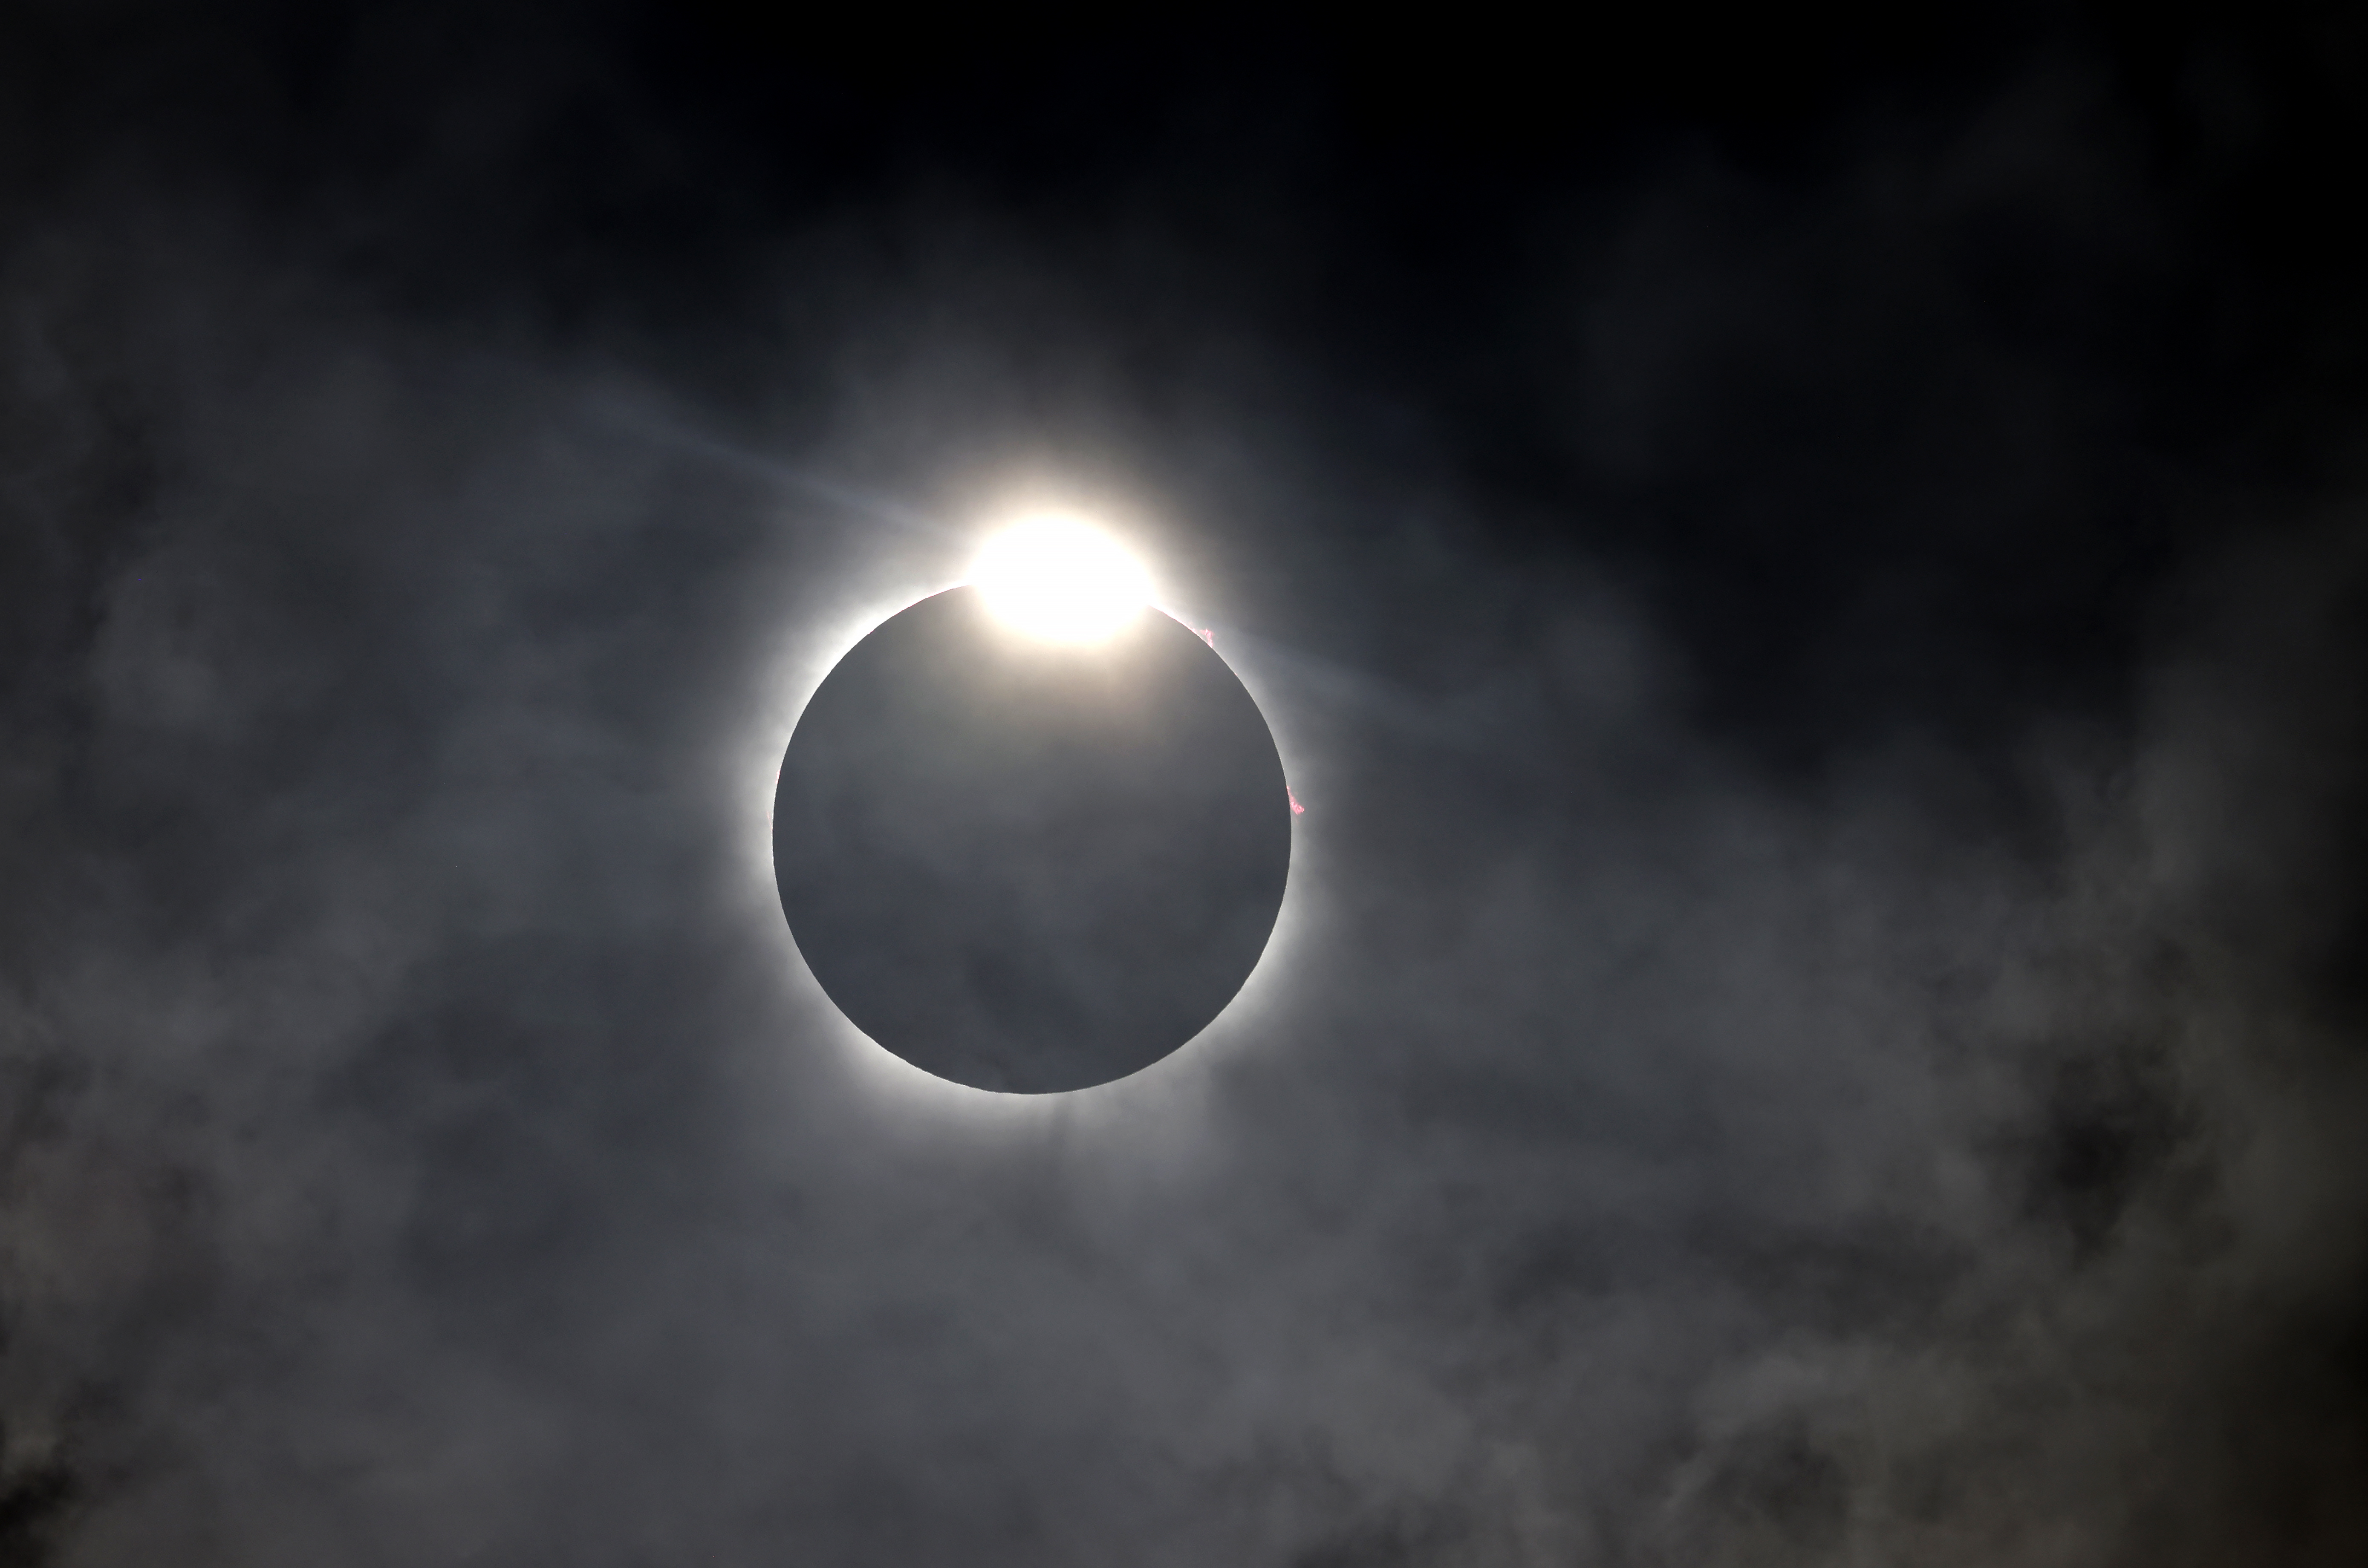 다이아몬드 반지 효과는 달이 텍사스 포트워스의 태양을 가릴 때 나타납니다.